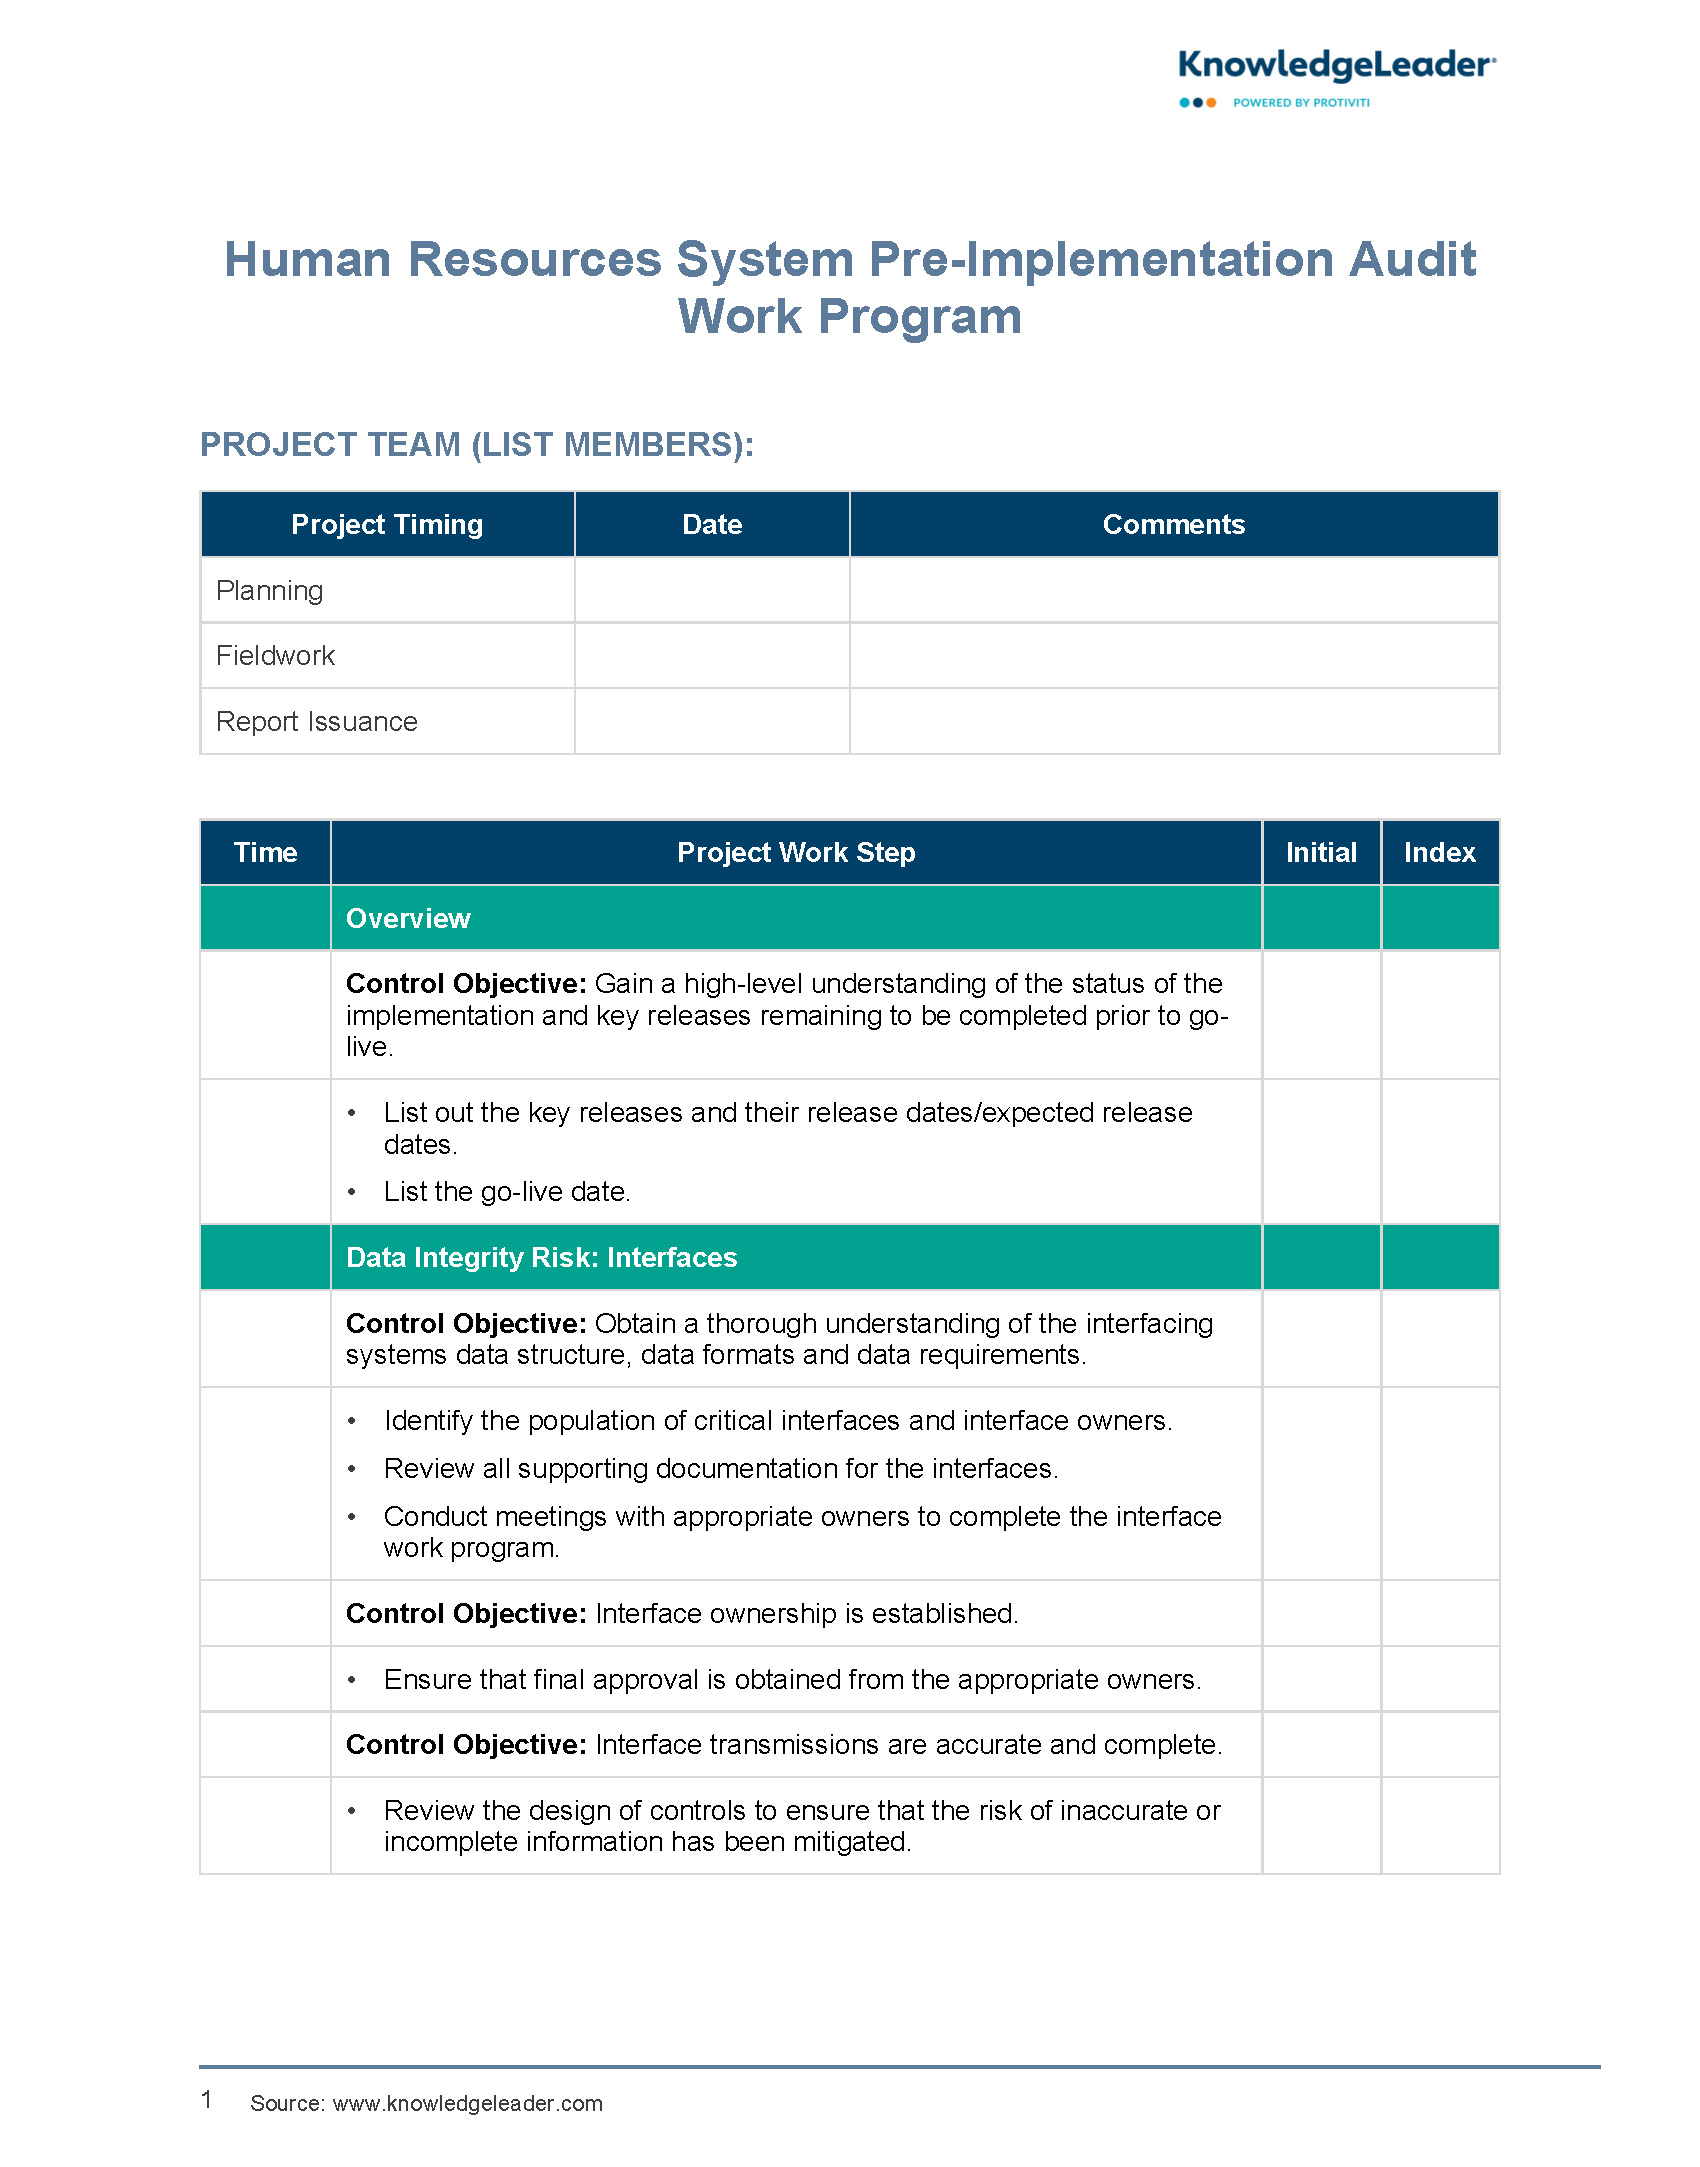 HR System Pre-Implementation Audit Work Program